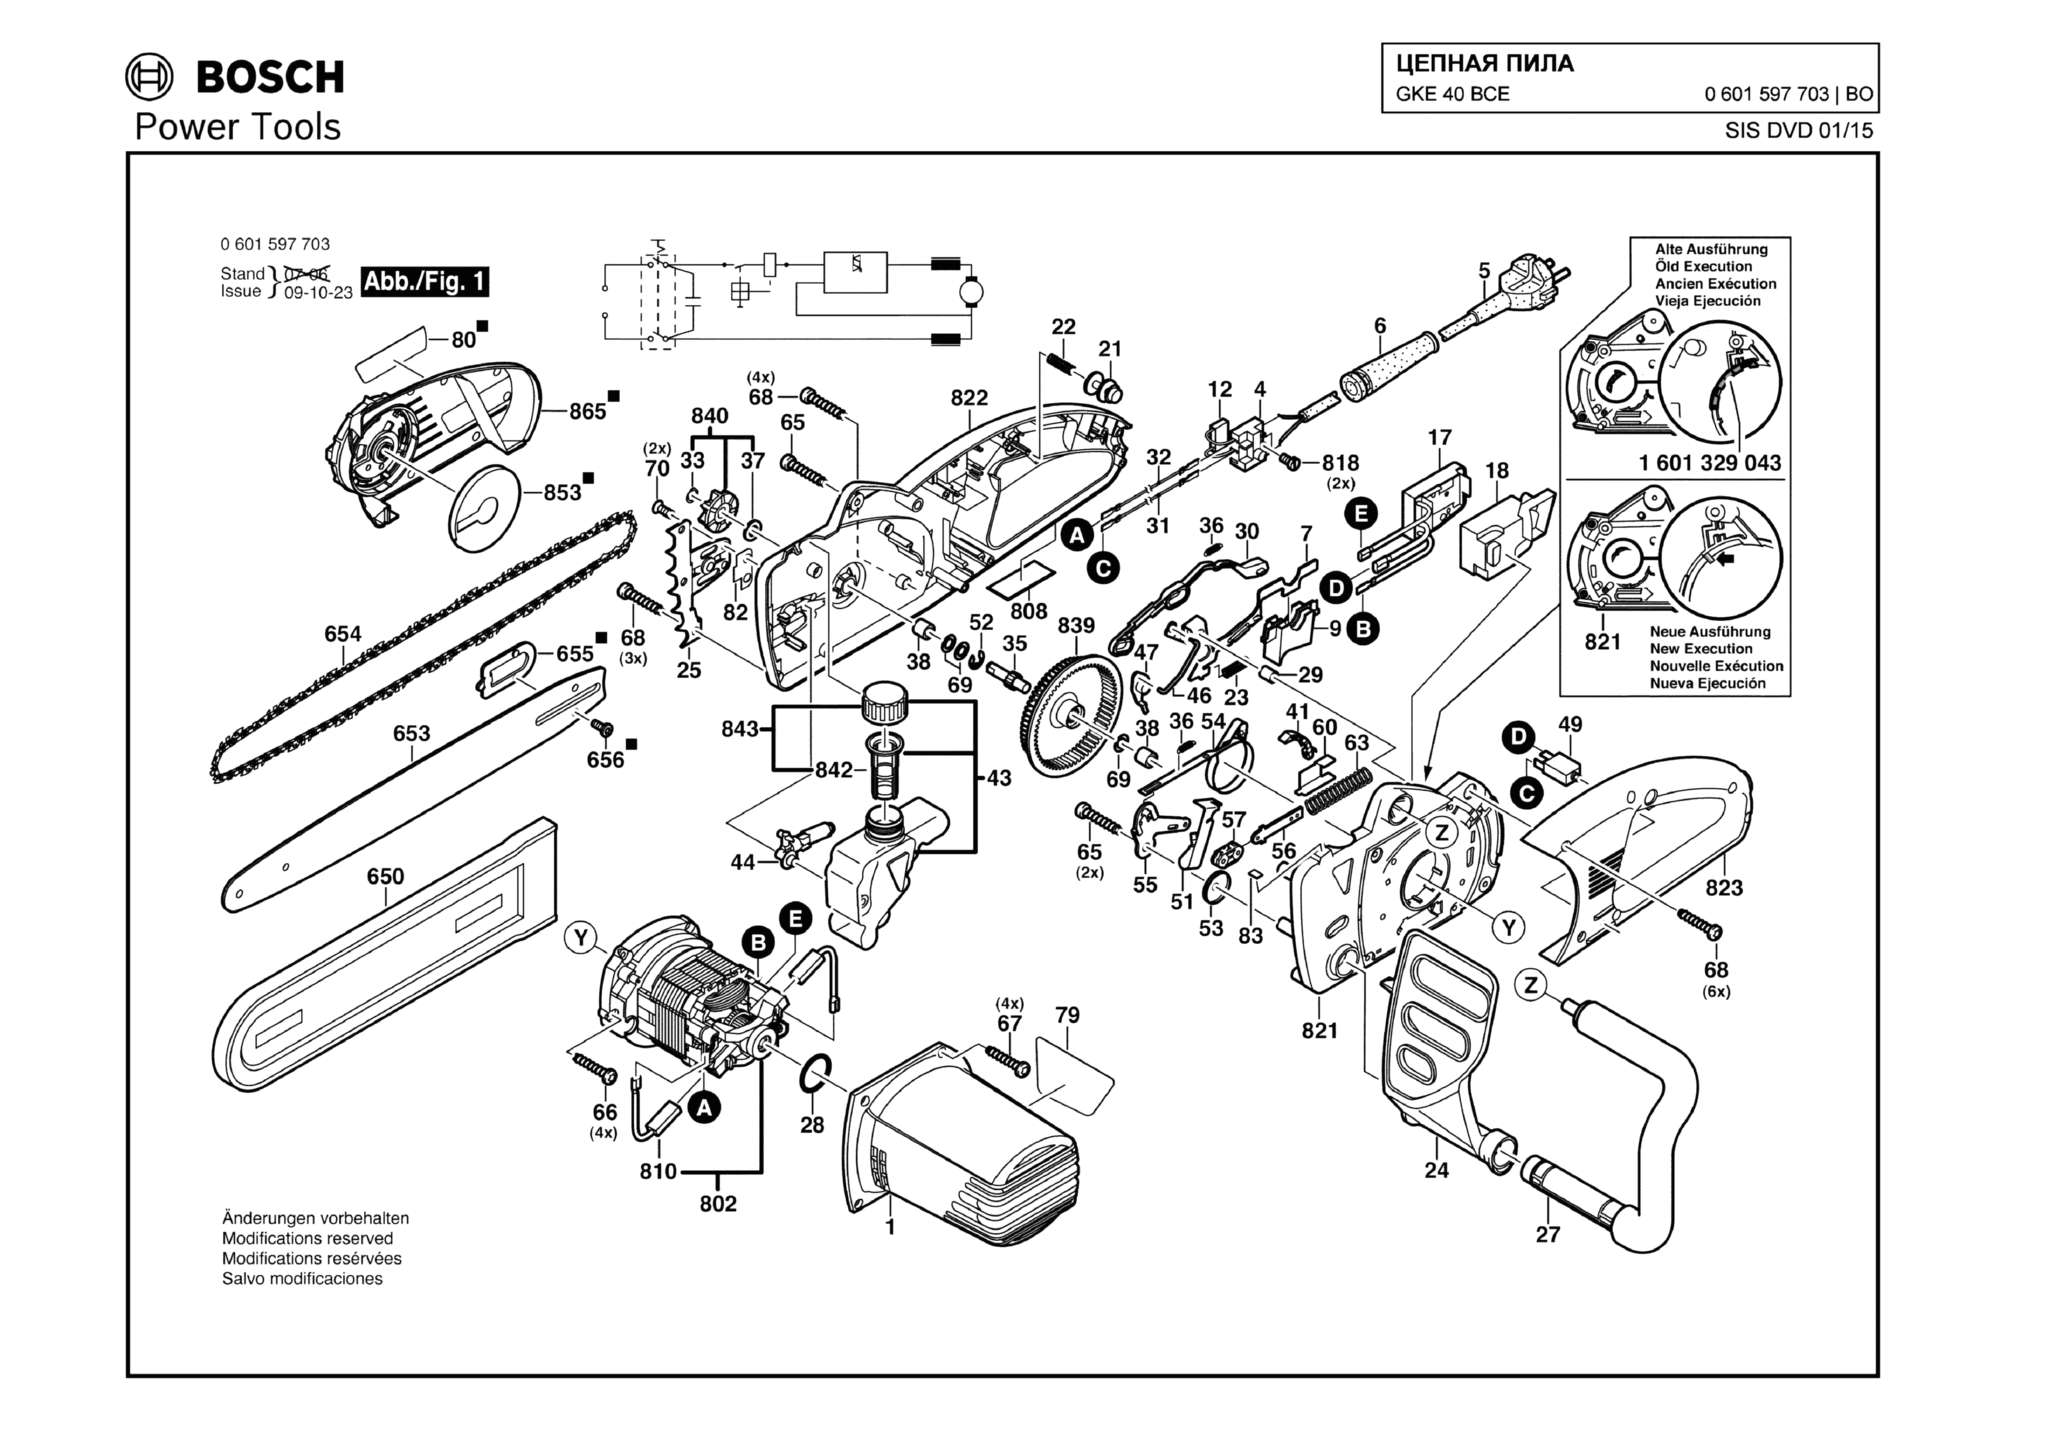 Запчасти, схема и деталировка Bosch GKE 40 BCE (ТИП 0601597703)